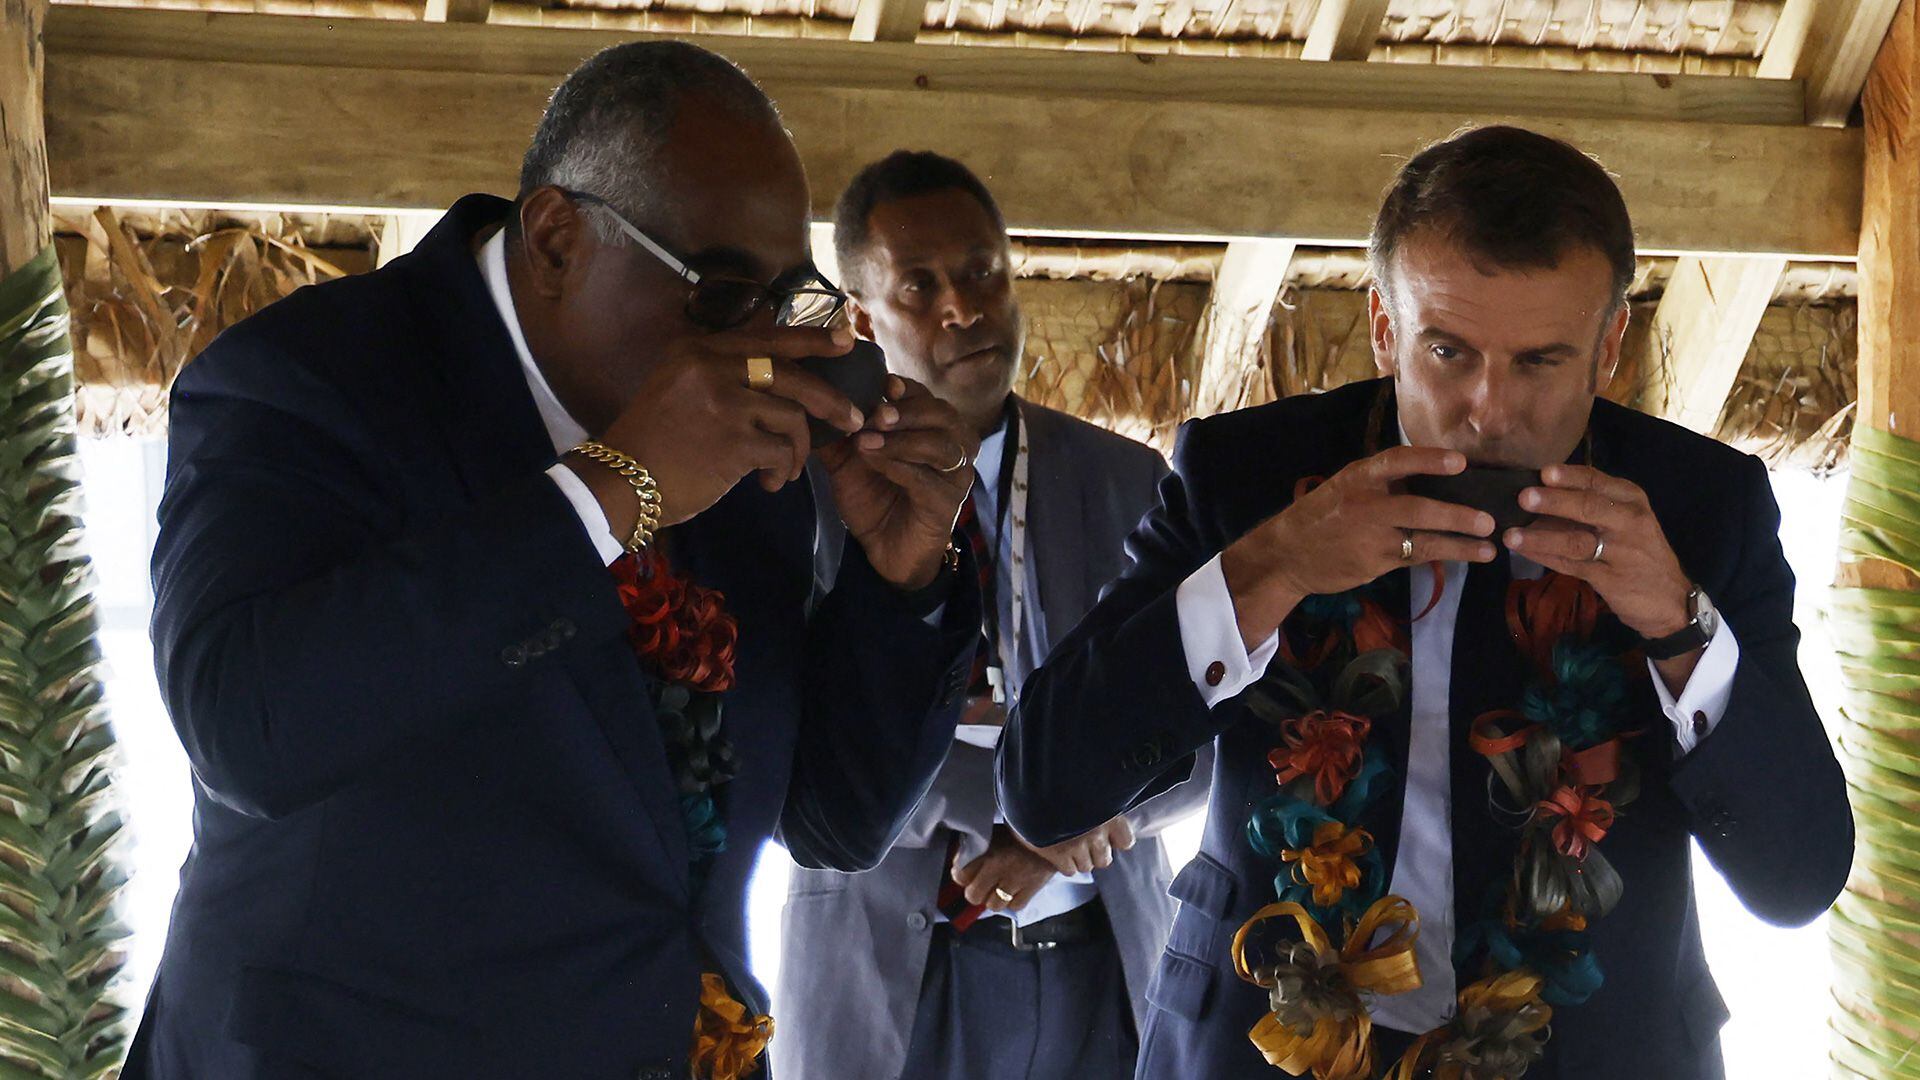 Kalsakau y Macron beben kava durante una ceremonia tradicional de bienvenida (Ludovic MARIN / AFP)